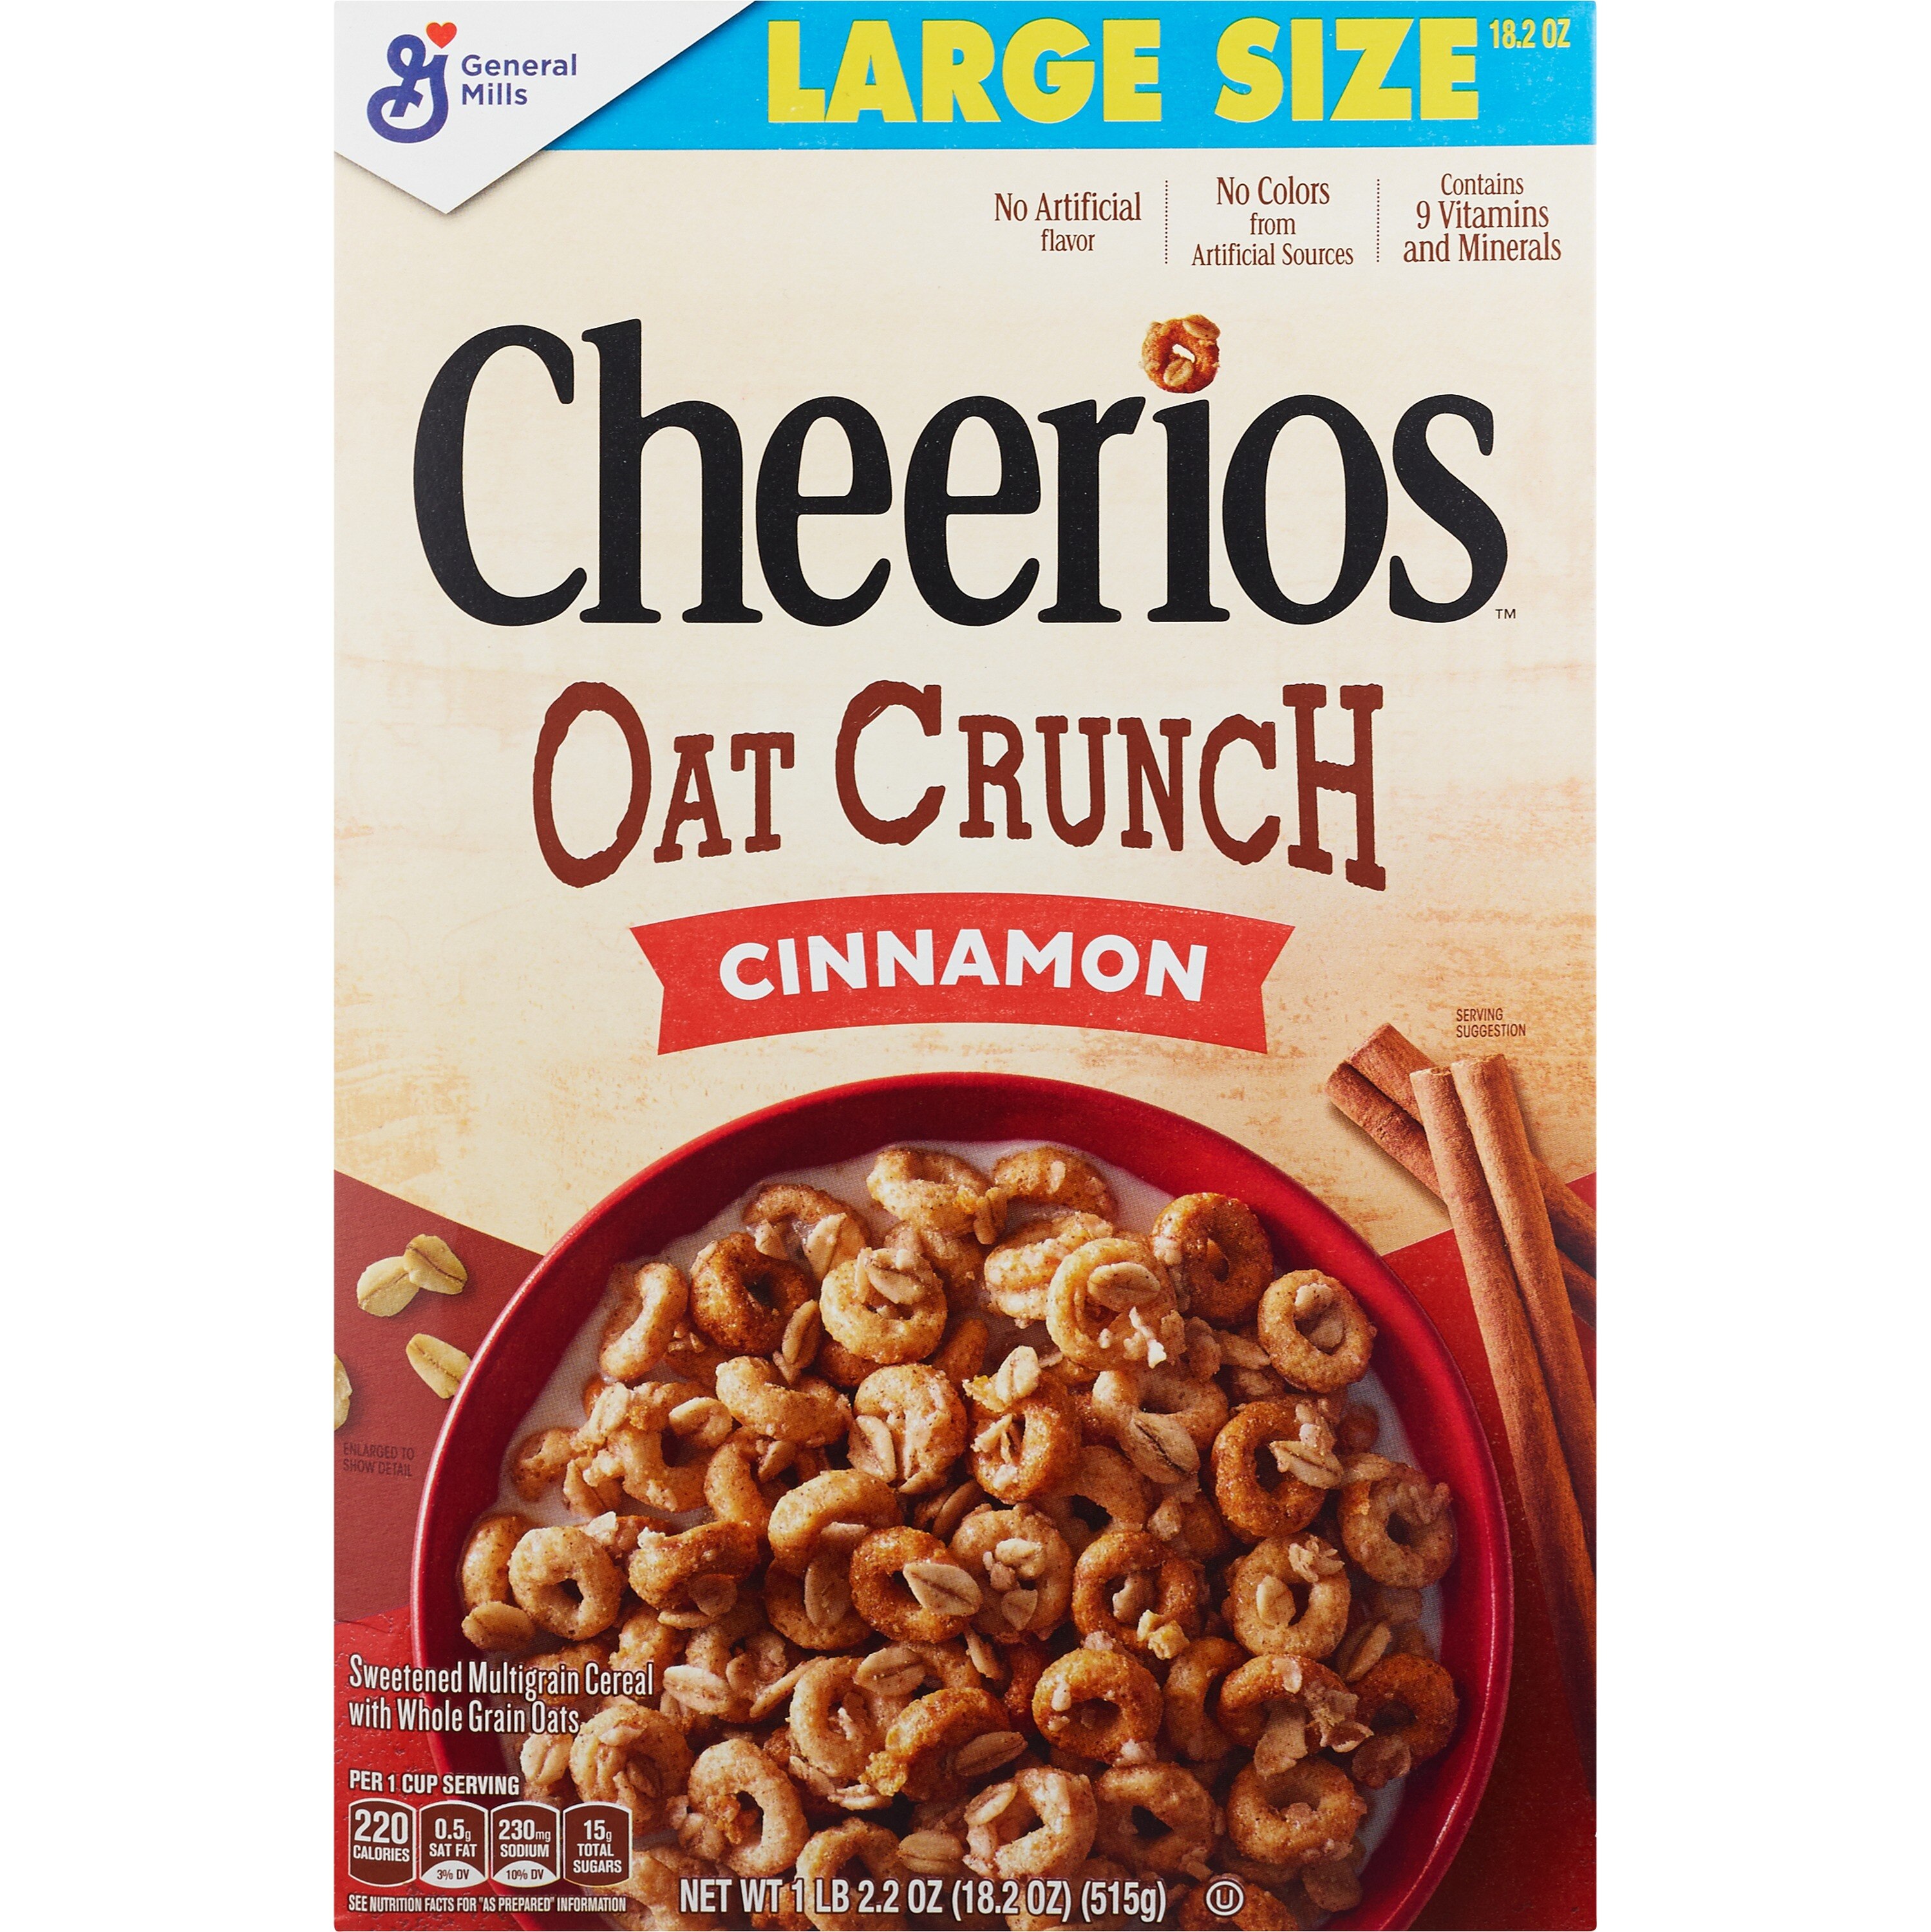 Cheerios Cinnamon Oat Crunch Cereal, 15.2 Oz - 18.2 Oz , CVS